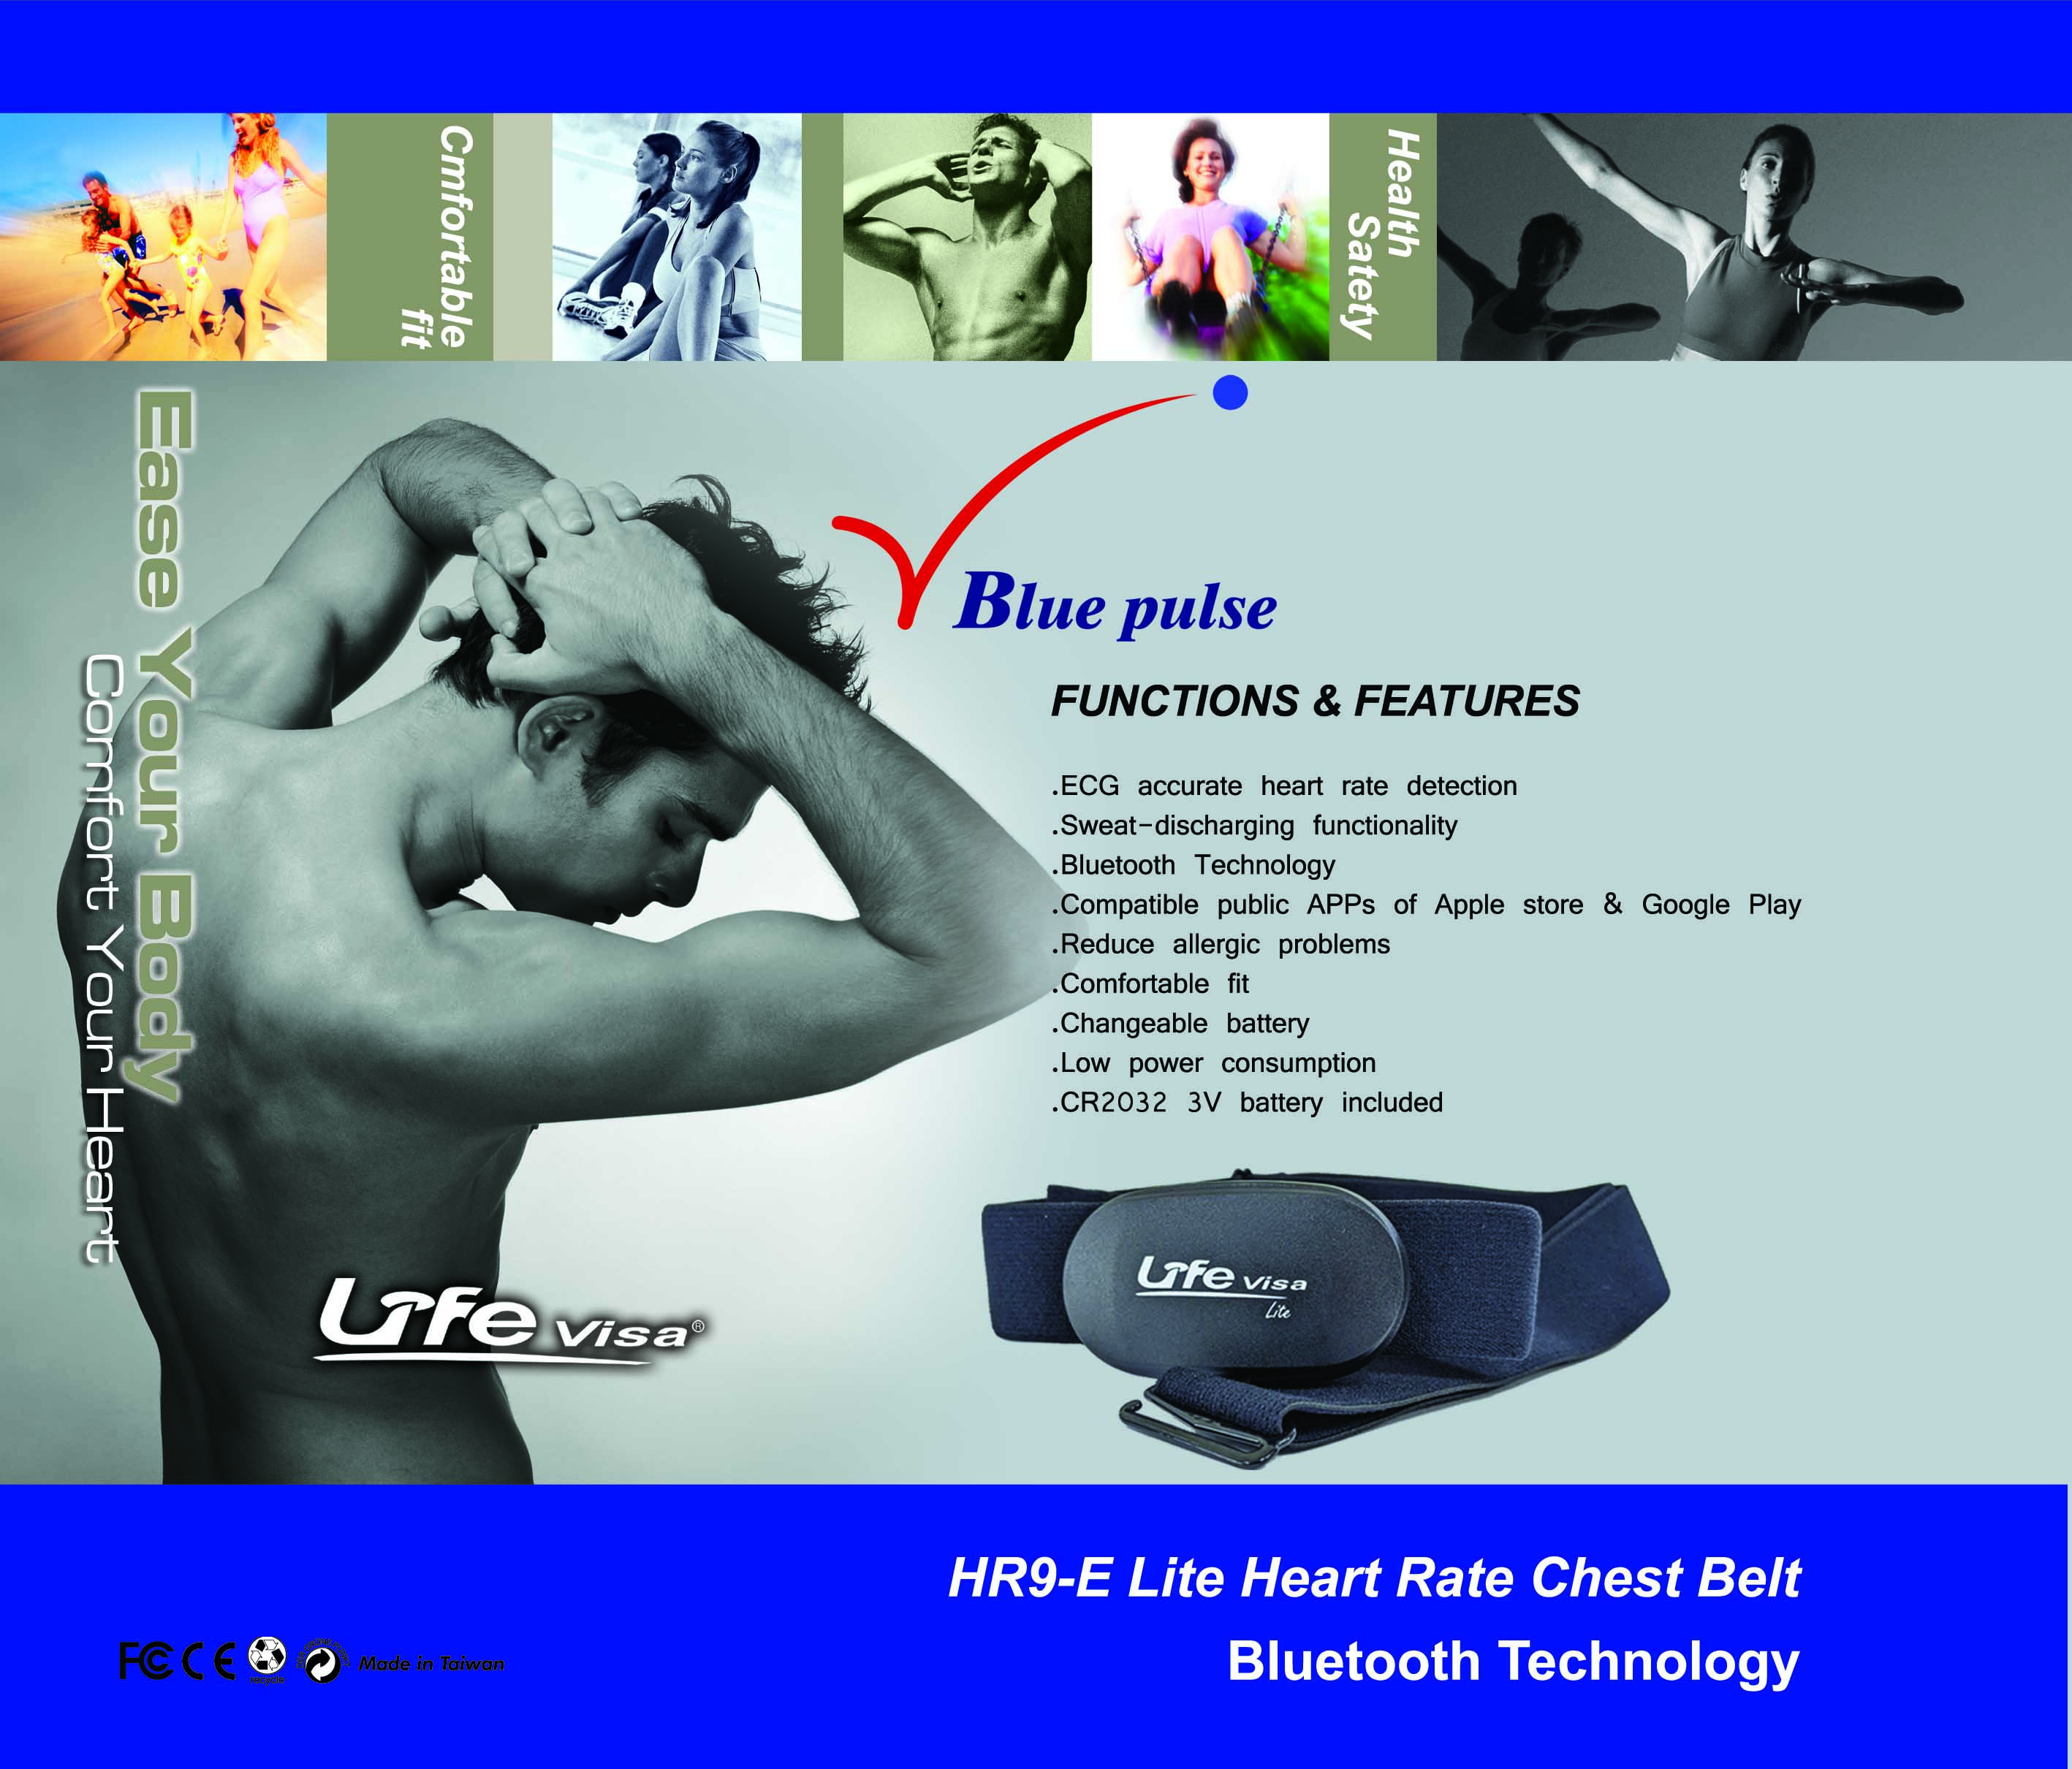 心跳帶，心率帶,藍芽心率帶,Lifevisa,lifevisa,Taiwan Biotronic,heart rate monitor,One-piece elastic heart rate chest strap